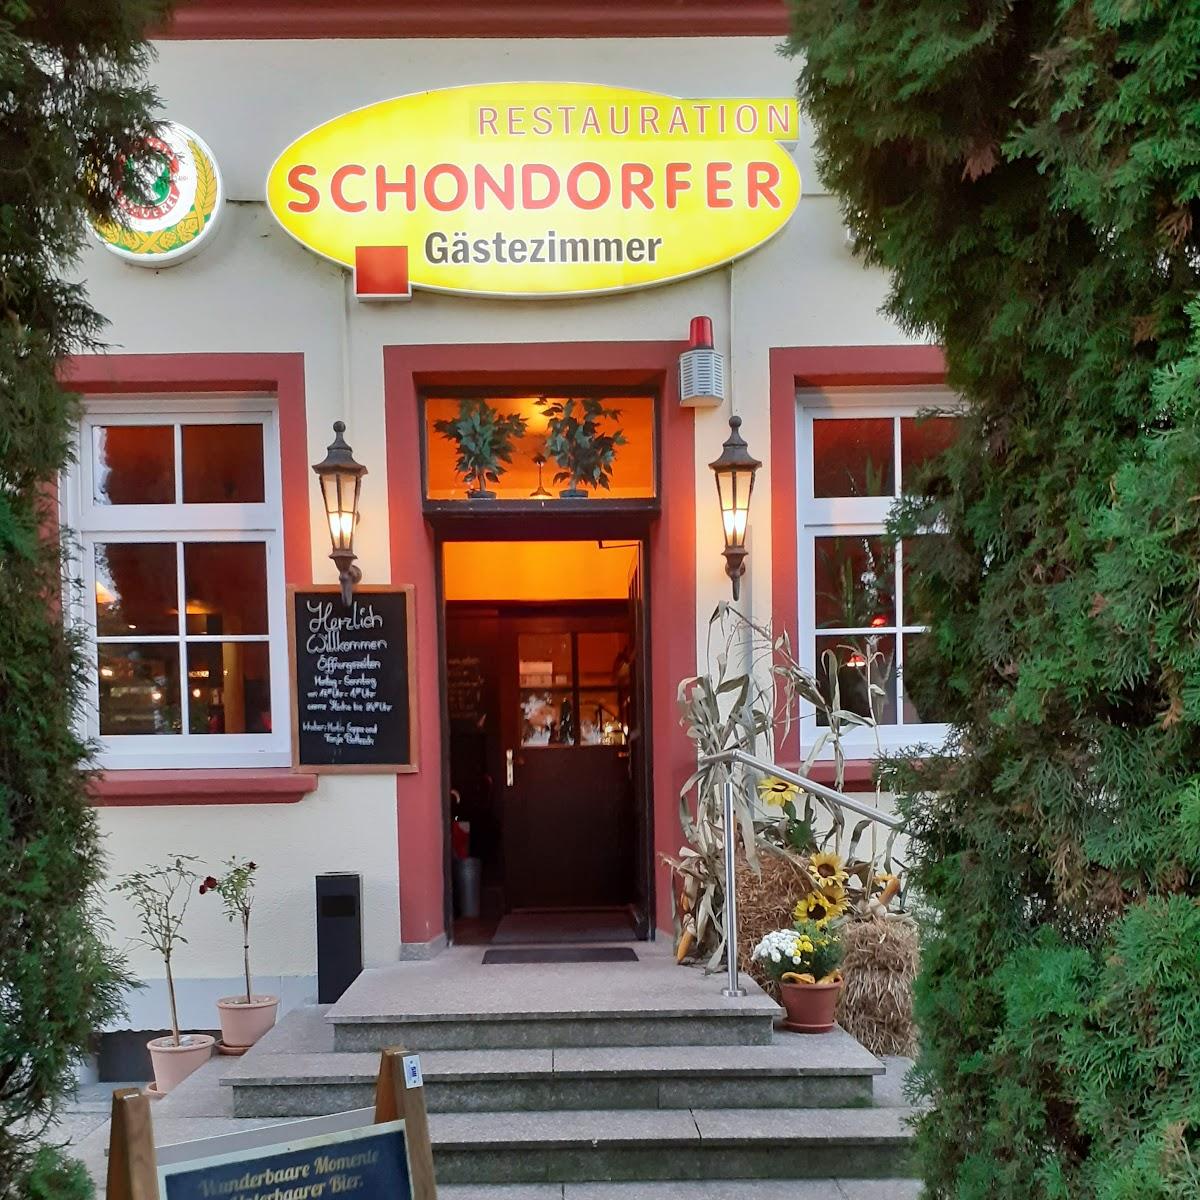 Restaurant "Restauration Schondorfer" in Schondorf am Ammersee